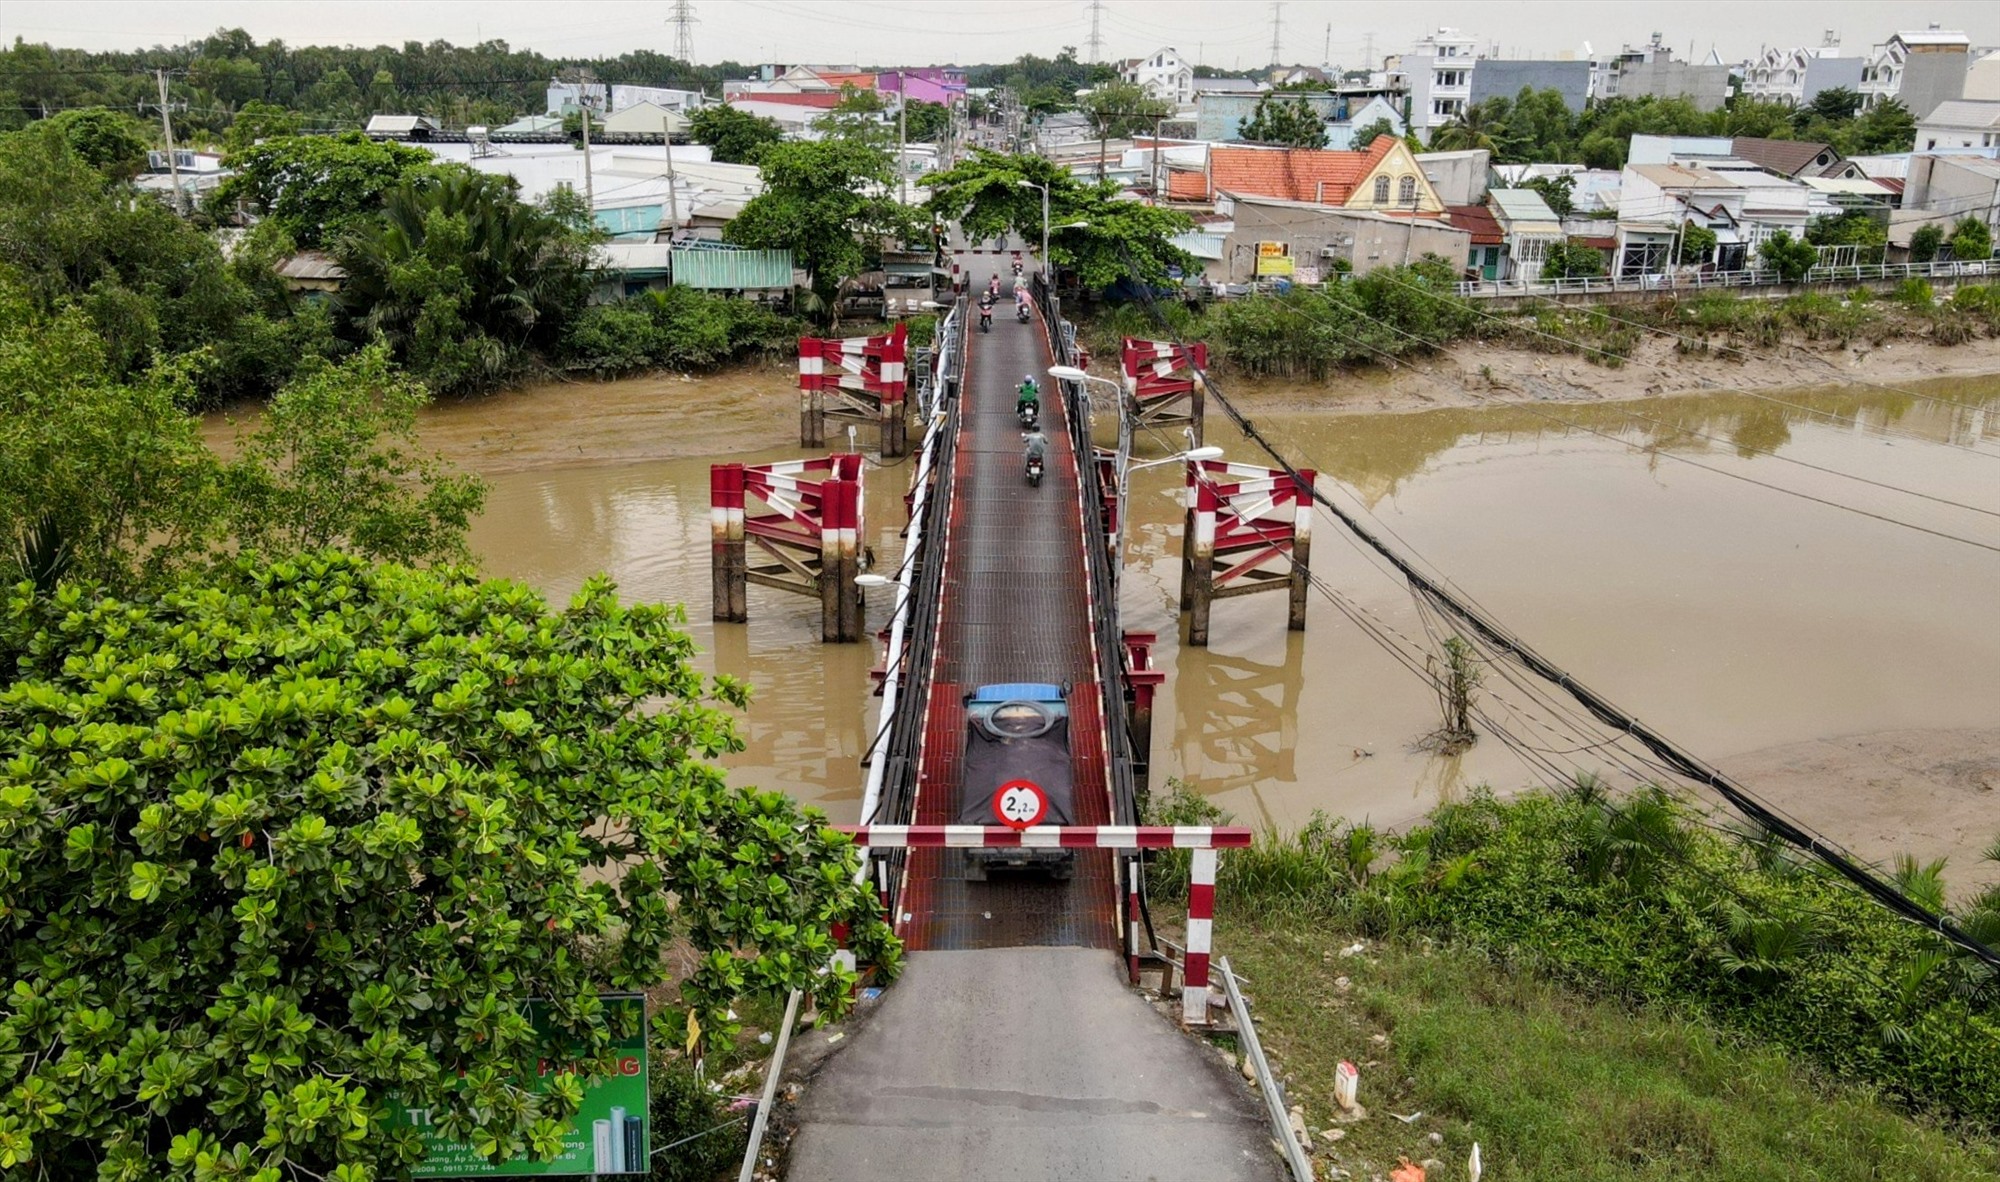 Tuy nhiên, trên đường Lê Văn Lương vẫn còn 3 cây cầu sắt xây trước năm 1975 hiện đã xuống cấp nặng, có nguy cơ sập bất cứ lúc nào. Trong ảnh là cầu  Rạch Tôm tuy đã xuống cấp nhưng vẫn thường xuyên phải chịu mật độ phương tiện cao trong đó có cả những xe tải.